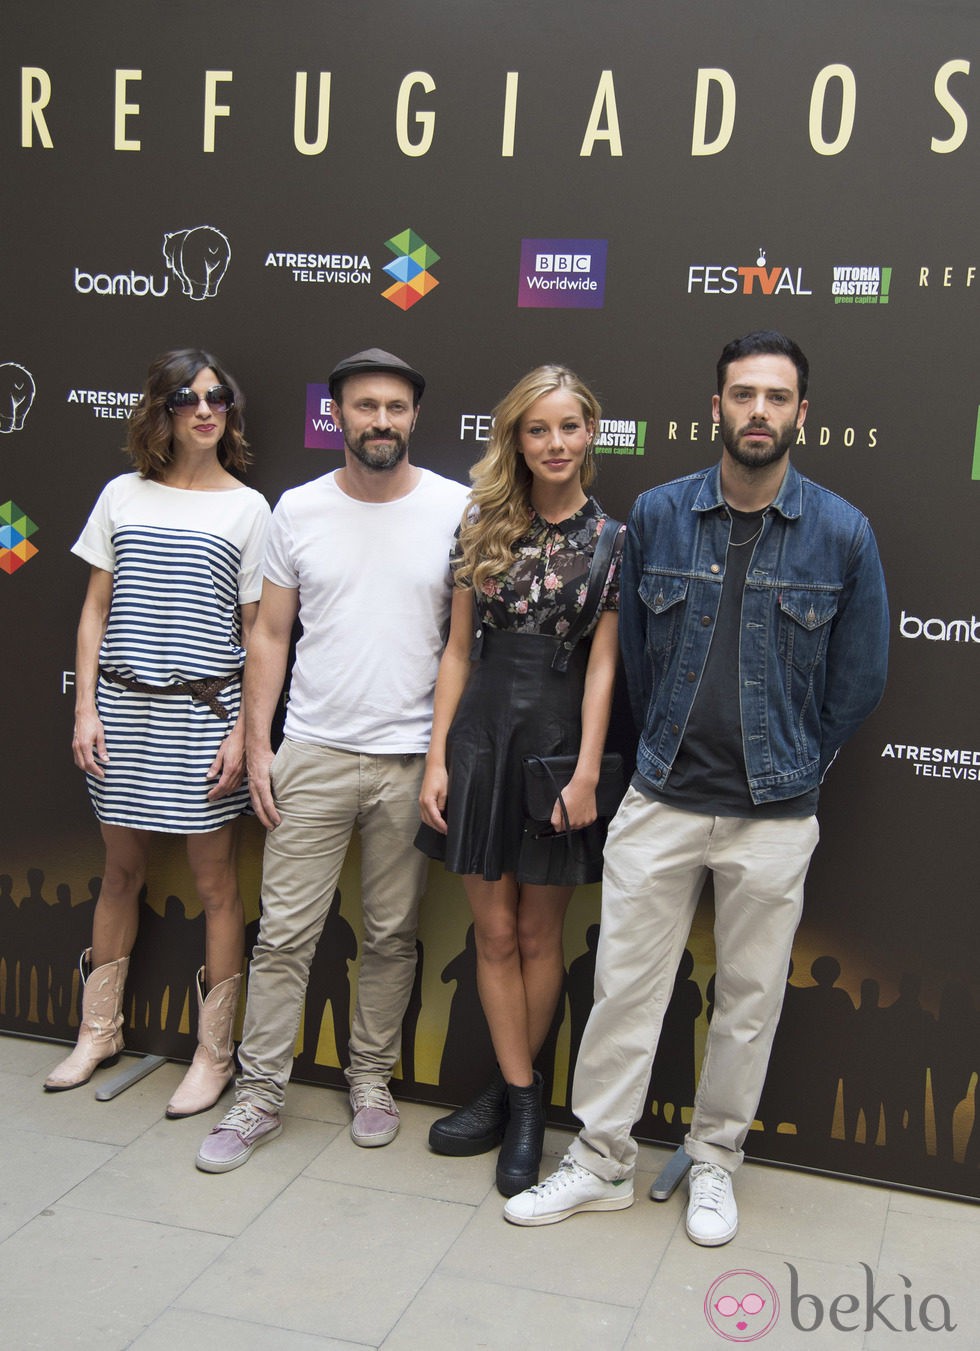 Natalia Tena, Will Keen, David Leon y Charlotte Vega en la presentación de 'Refugiados' en el FesTVal de Vitoria 2014